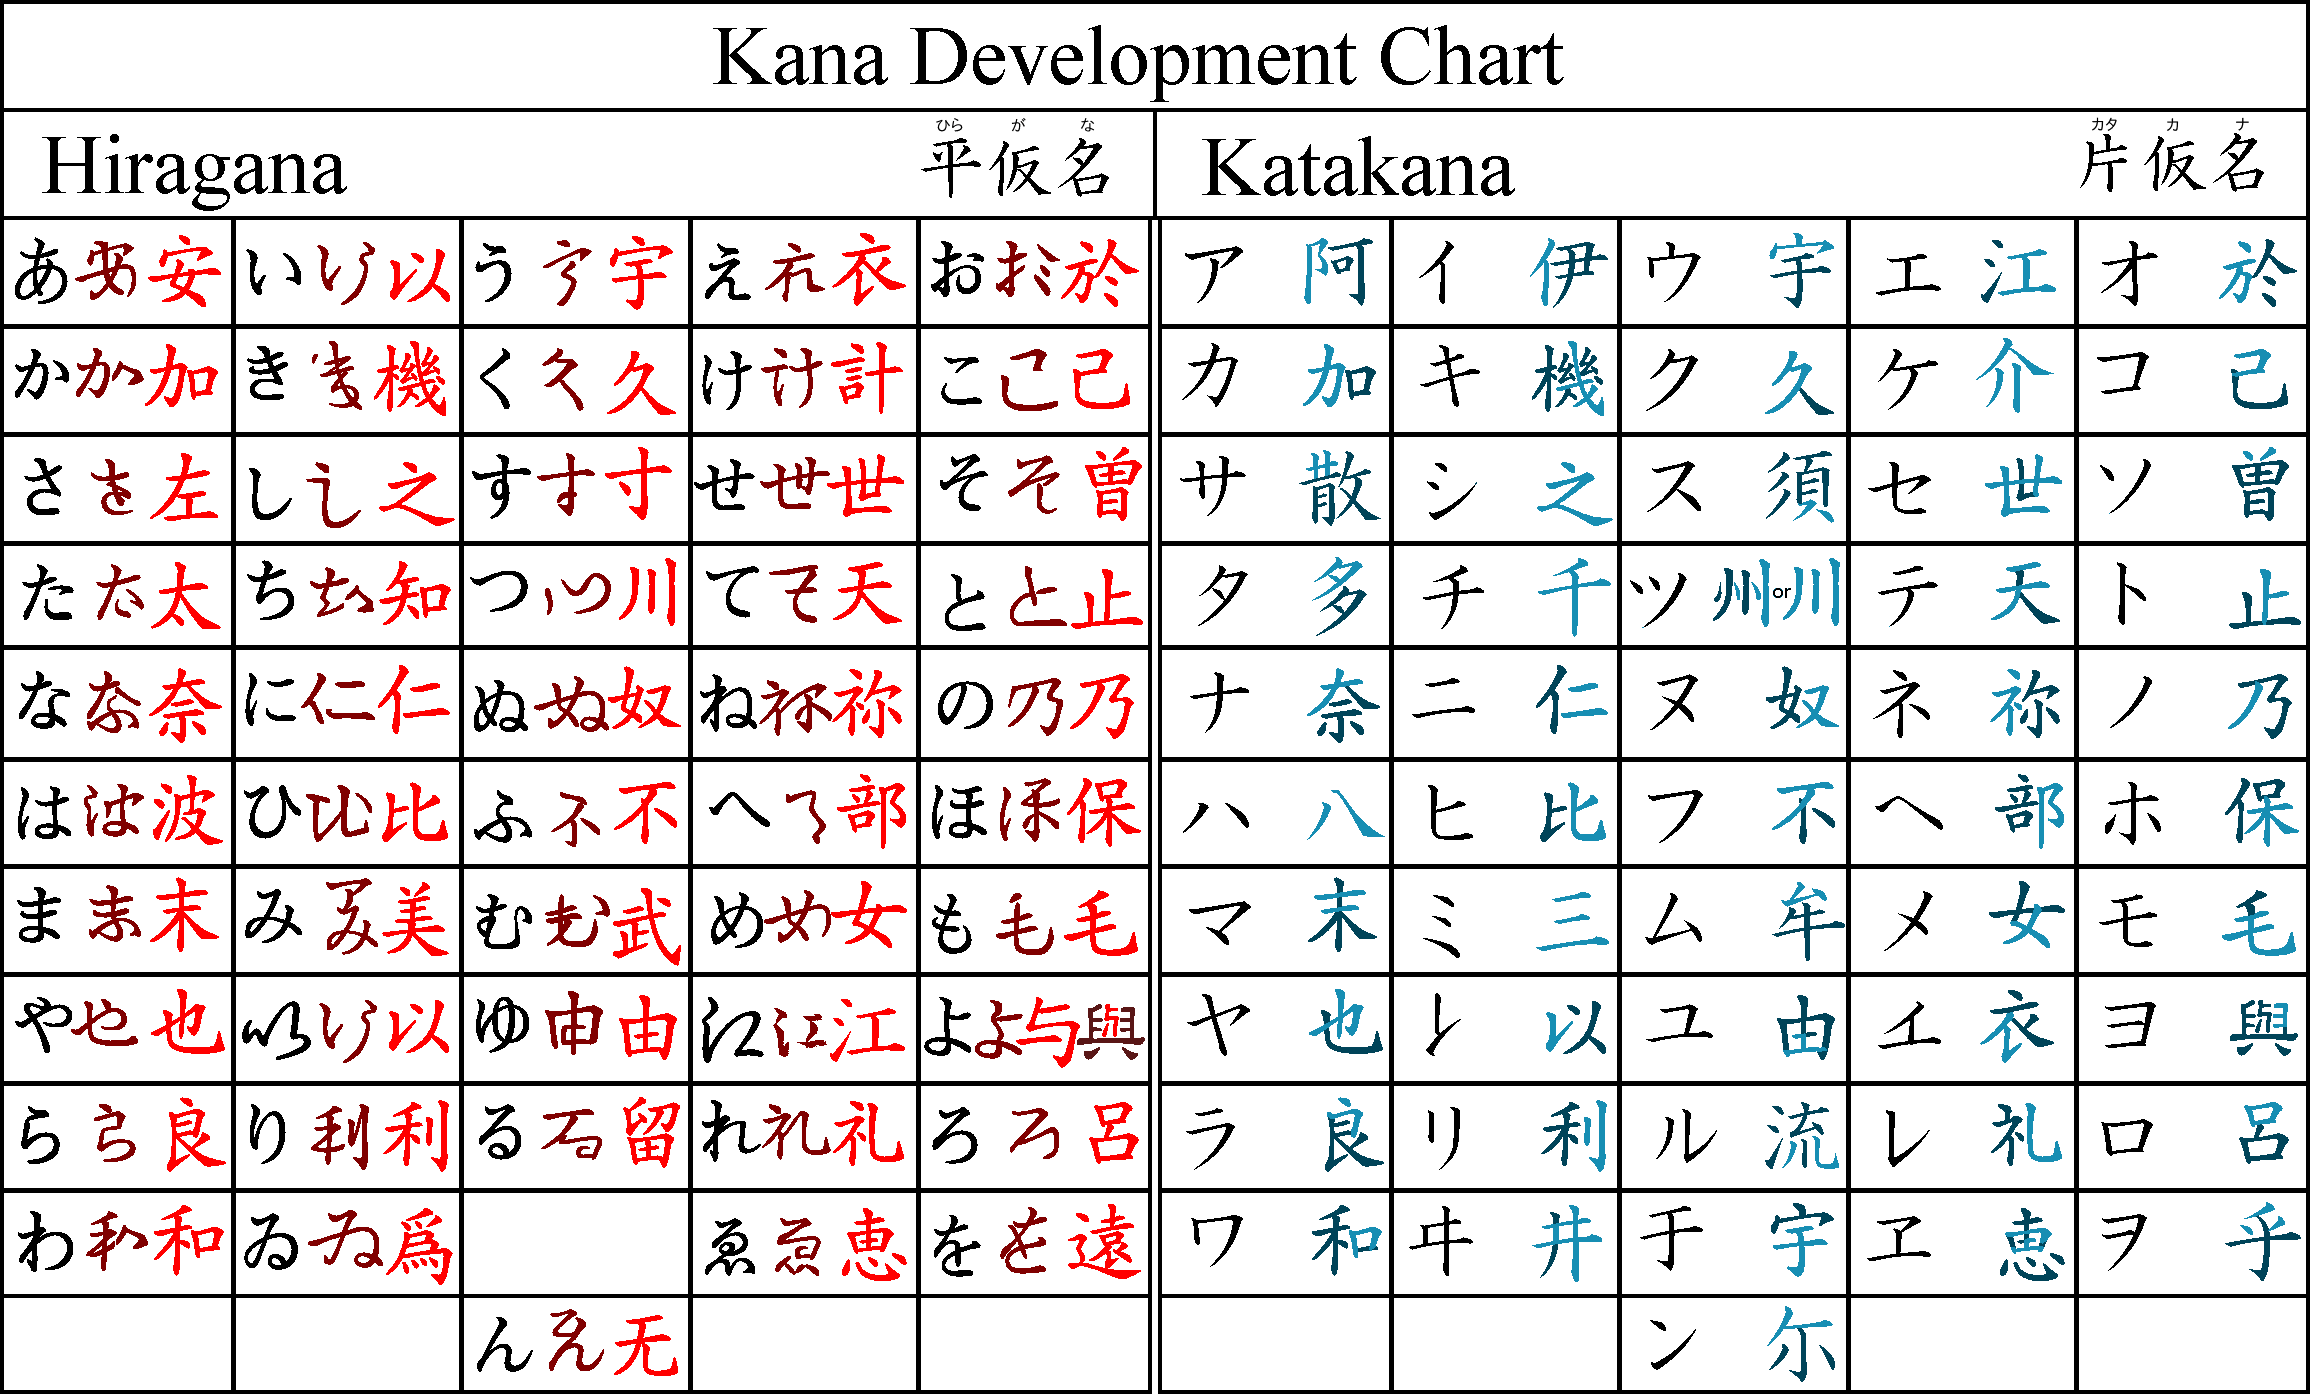 vs hiragana kanji æ—¥è¯­å¹³å‡åå¯¹åº”å“ªäº›è‰ä¹¦æ±‰å­— ç™¾åº¦çŸ¥é“